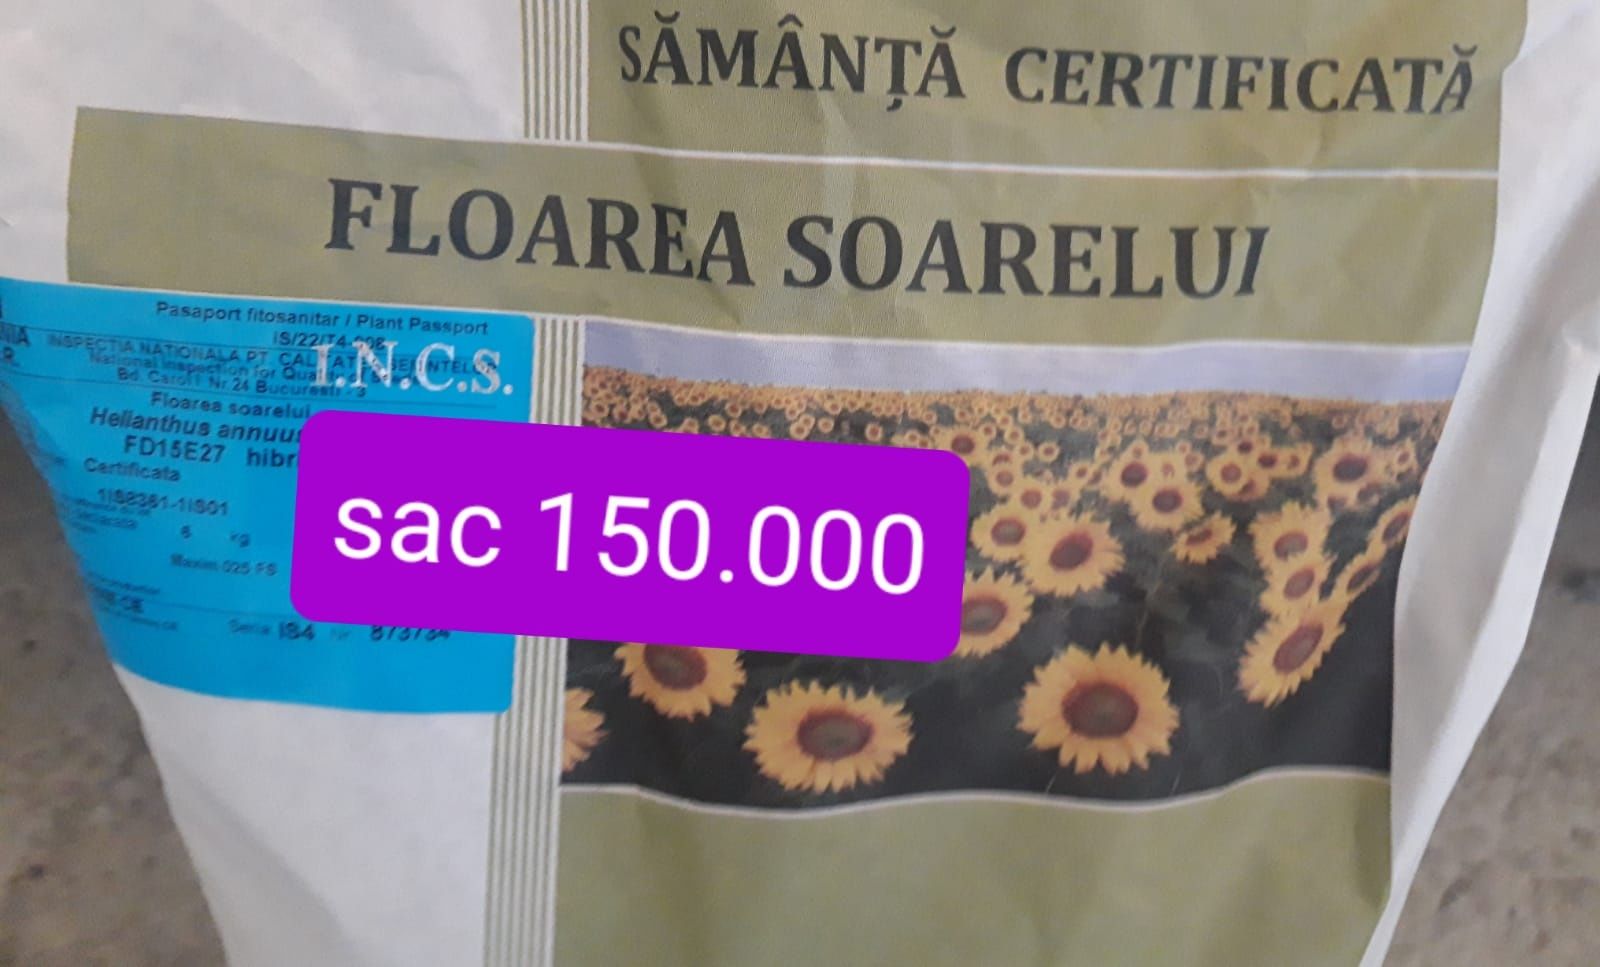 Samanta Porumb MAGNUS ,Floarea Soarelui FD15E27,Samanta Lucerna Certif